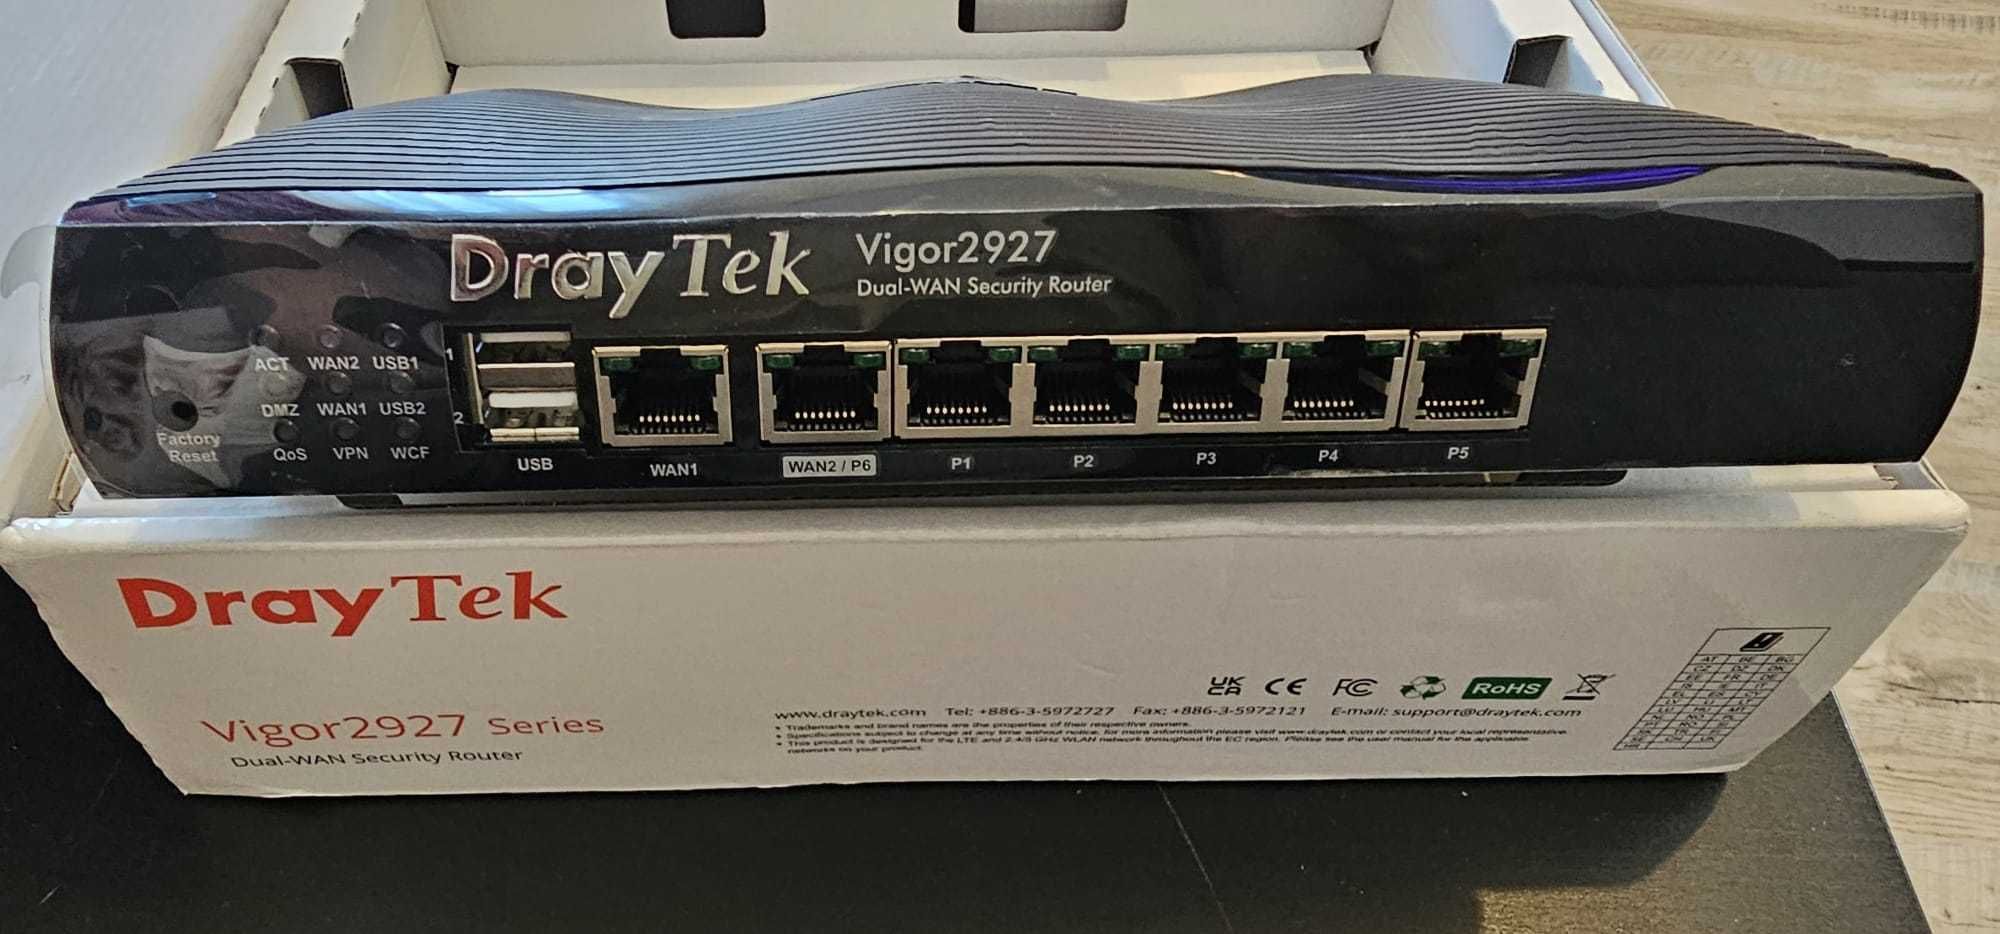 Router DrayTek Vigor2927 - Dual WAN, VPN